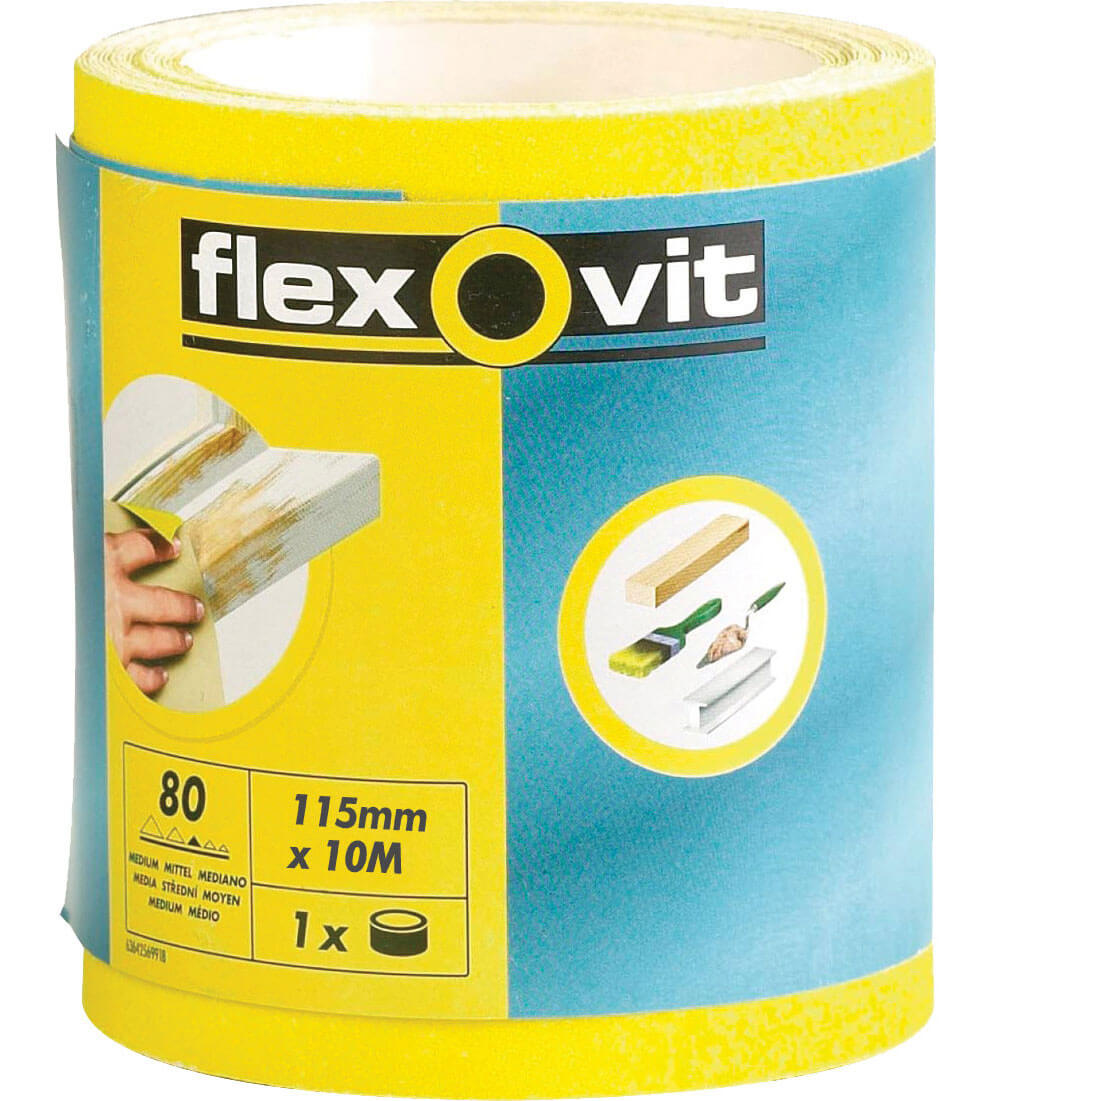 Image of Flexovit High Performance Sanding Roll 115mm 5m 120g